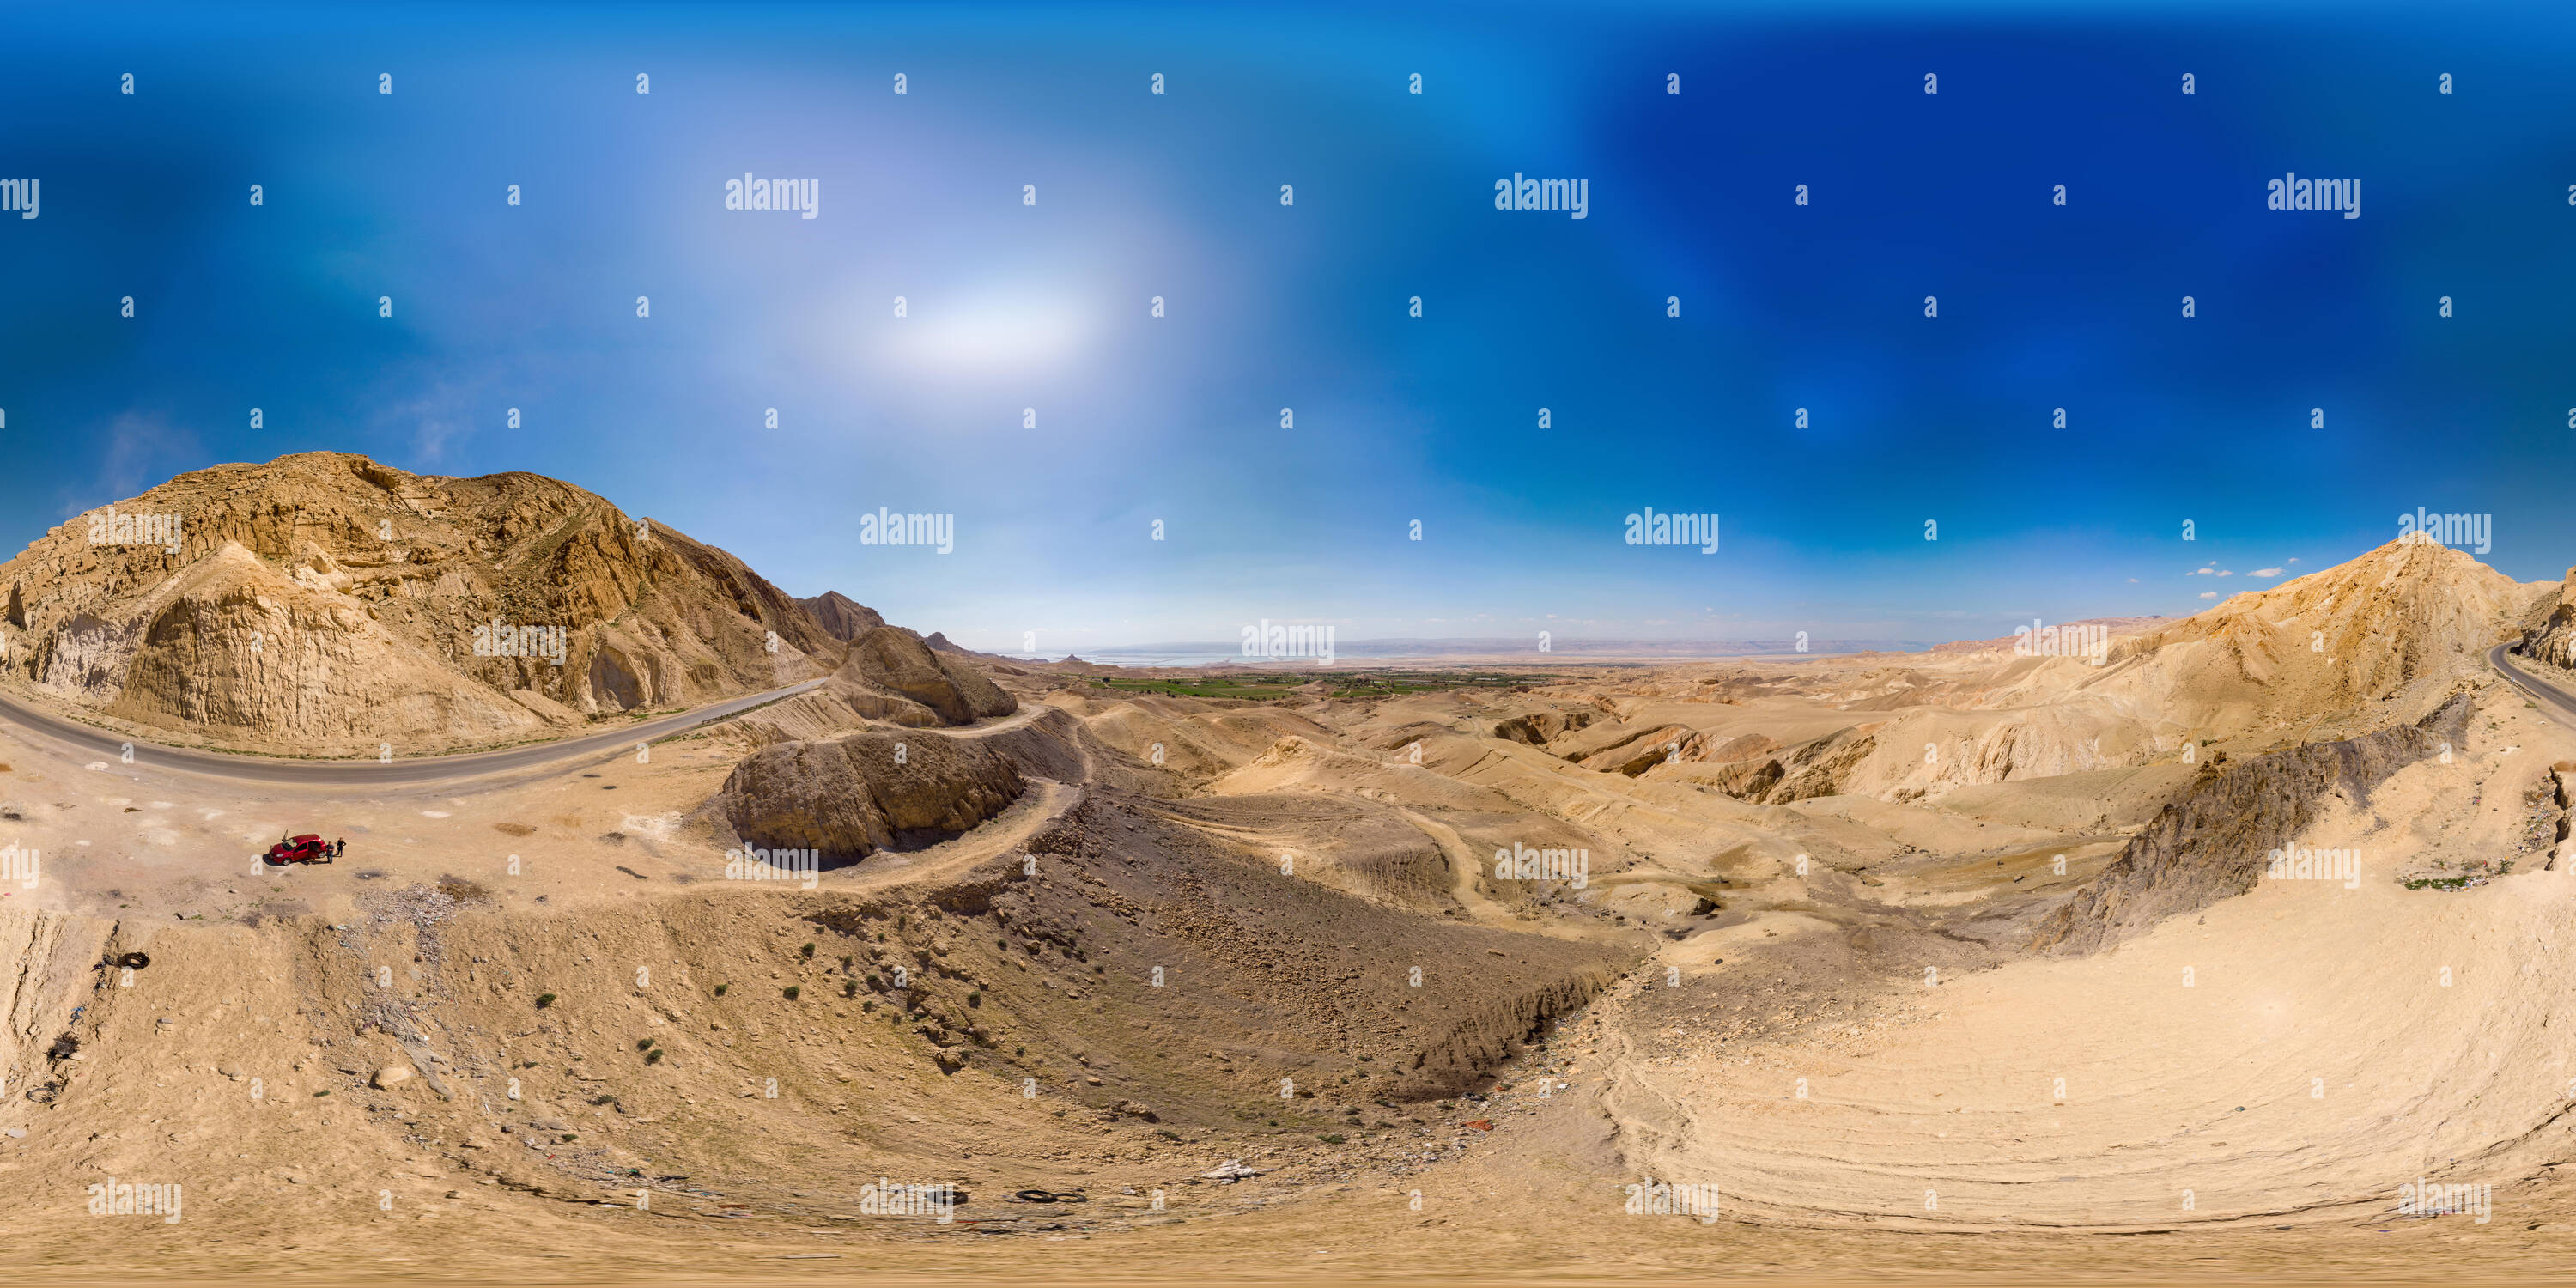 Vue panoramique à 360° de Spherical panorama 360 degrés le long du désert côtier à la mer Morte en Jordanie, Moyen-Orient